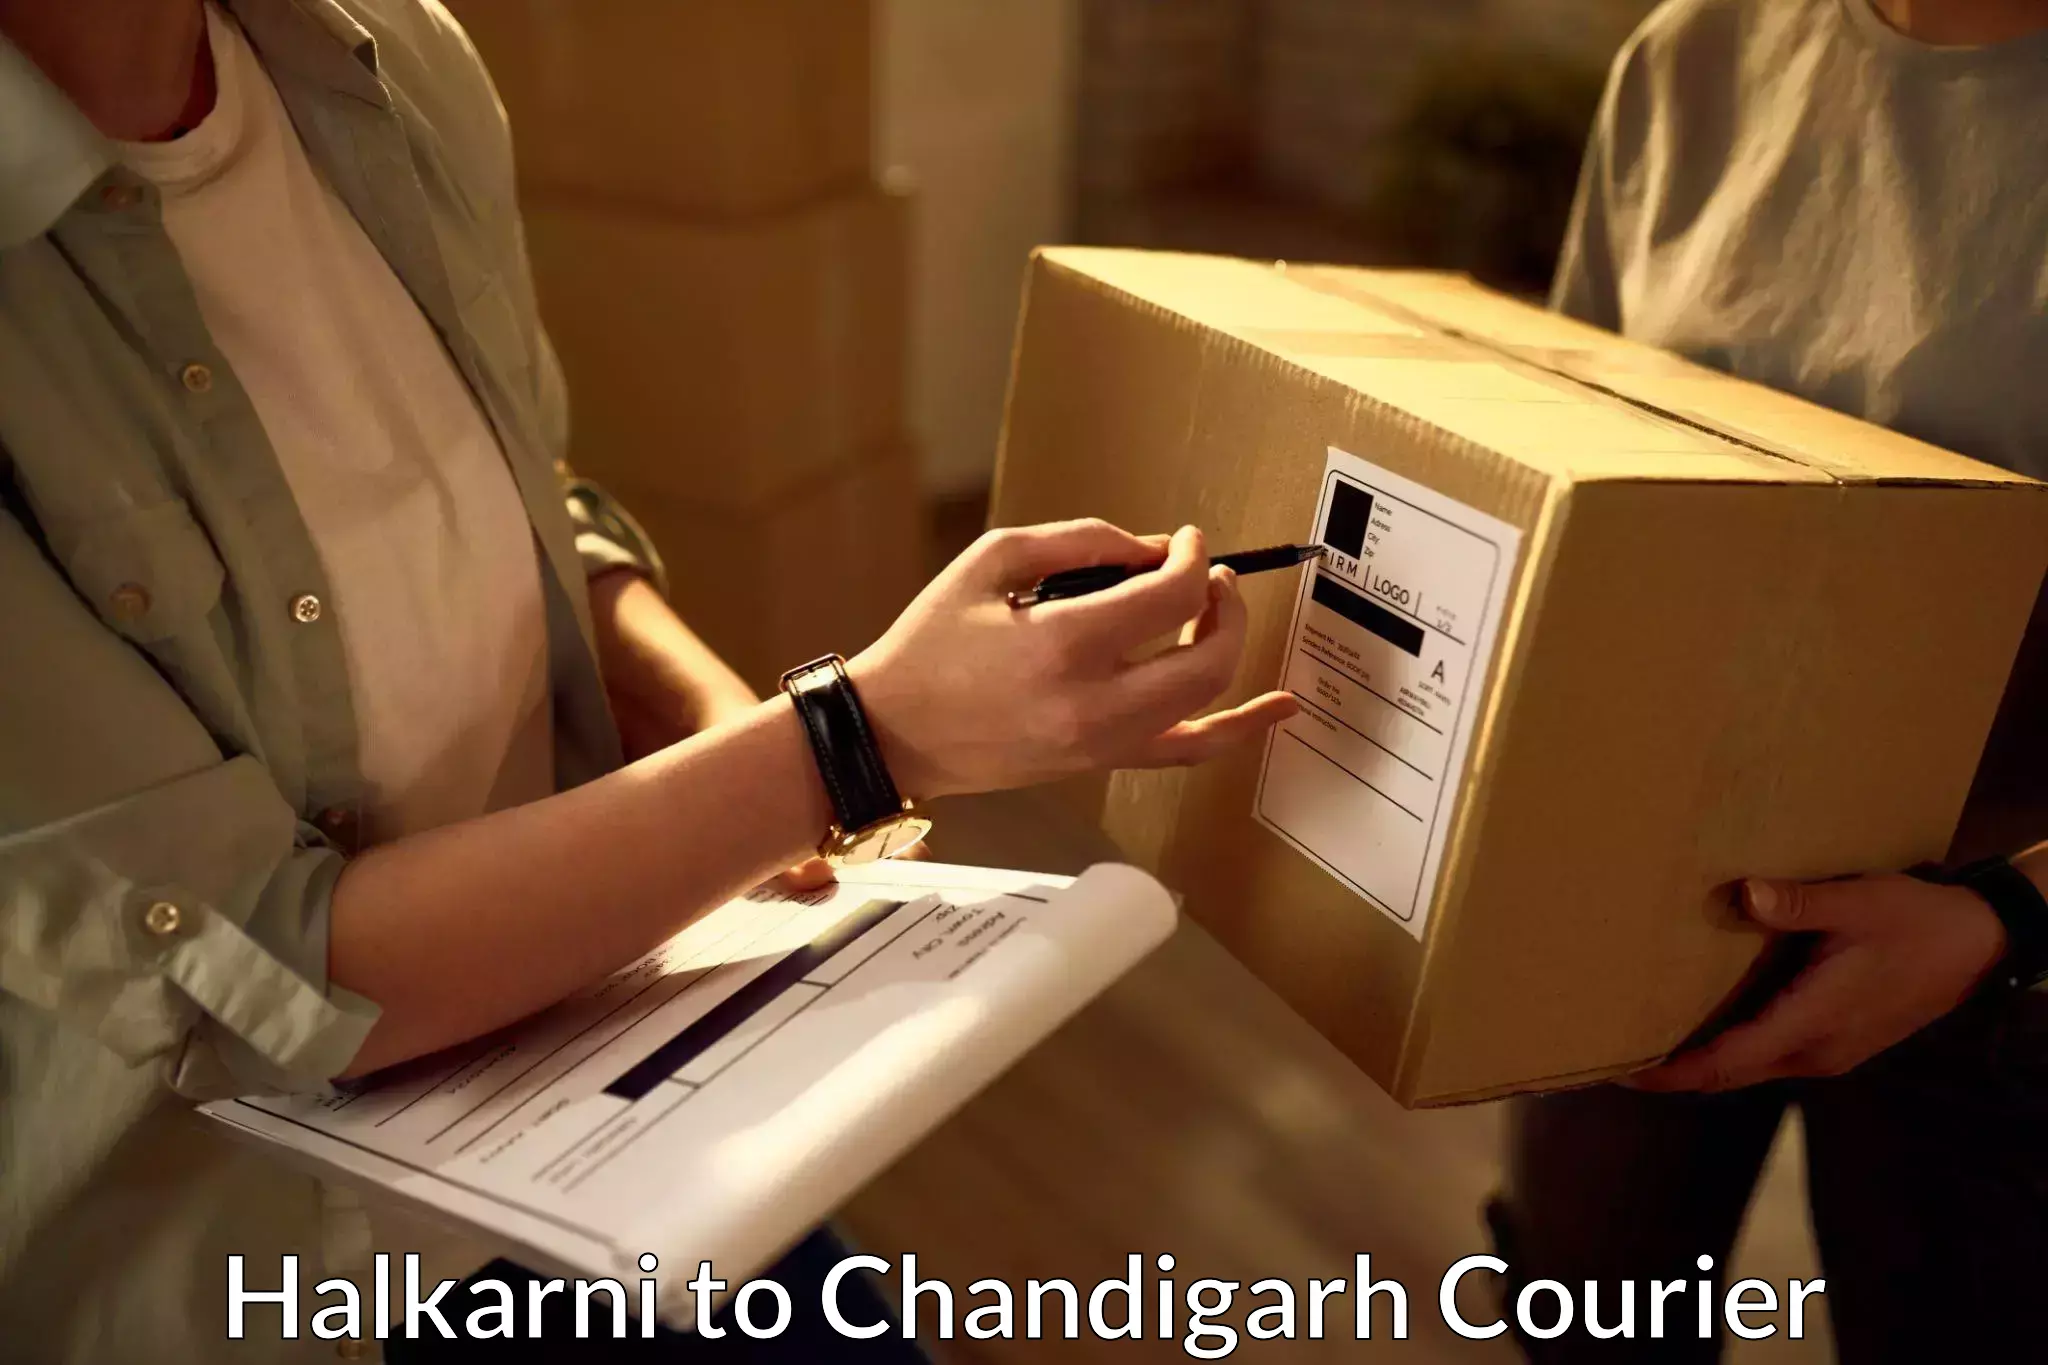 Efficient freight service Halkarni to Chandigarh